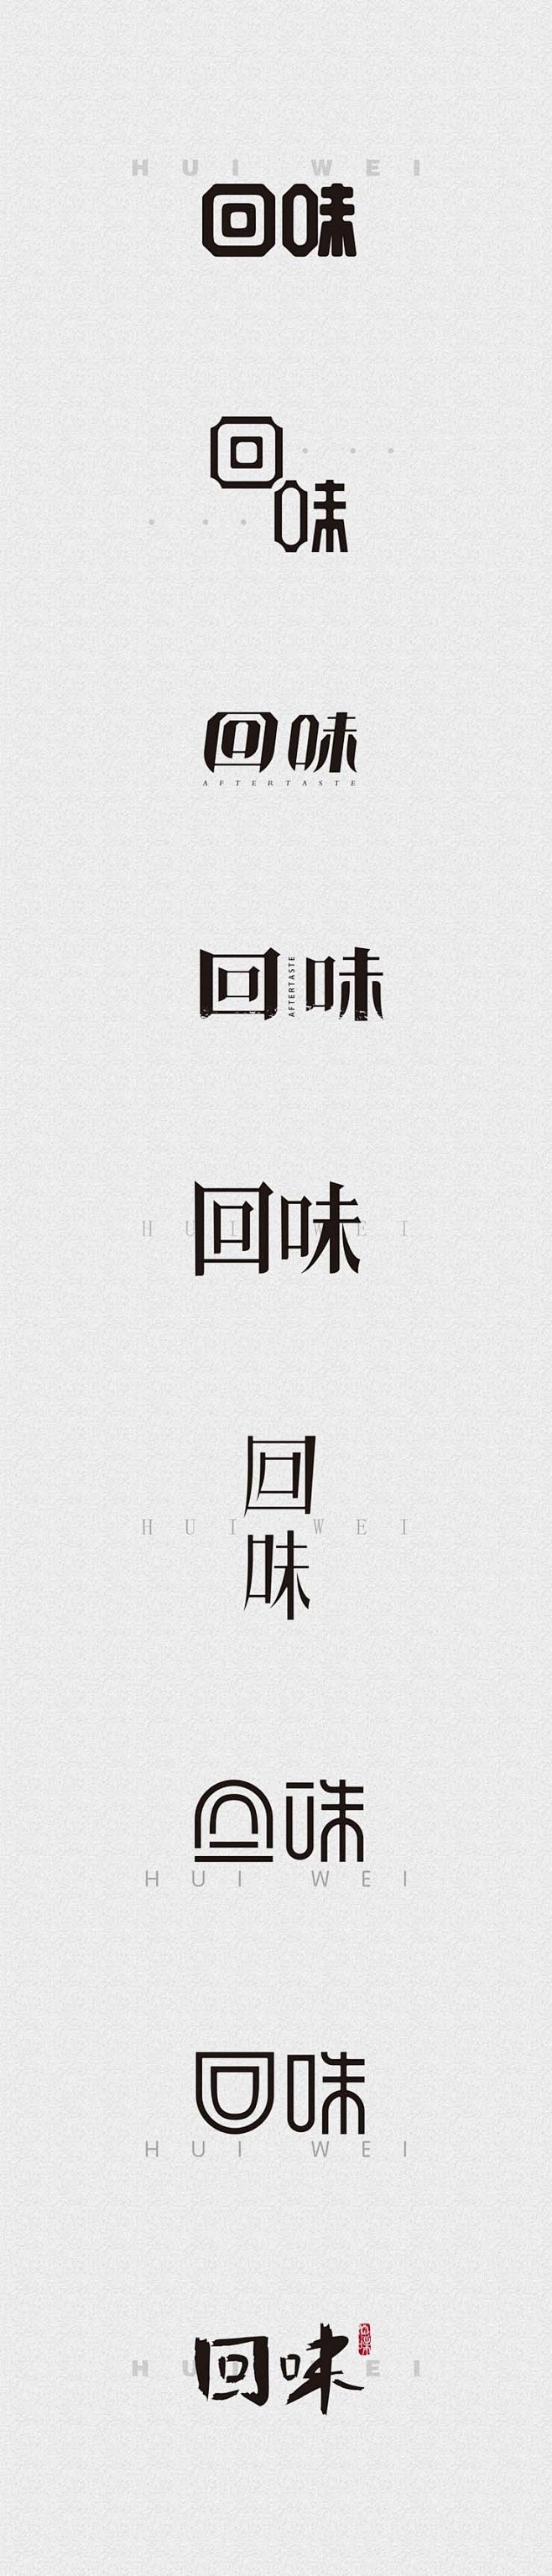 回味 _艺术字体设计_字体下载_中国书法...